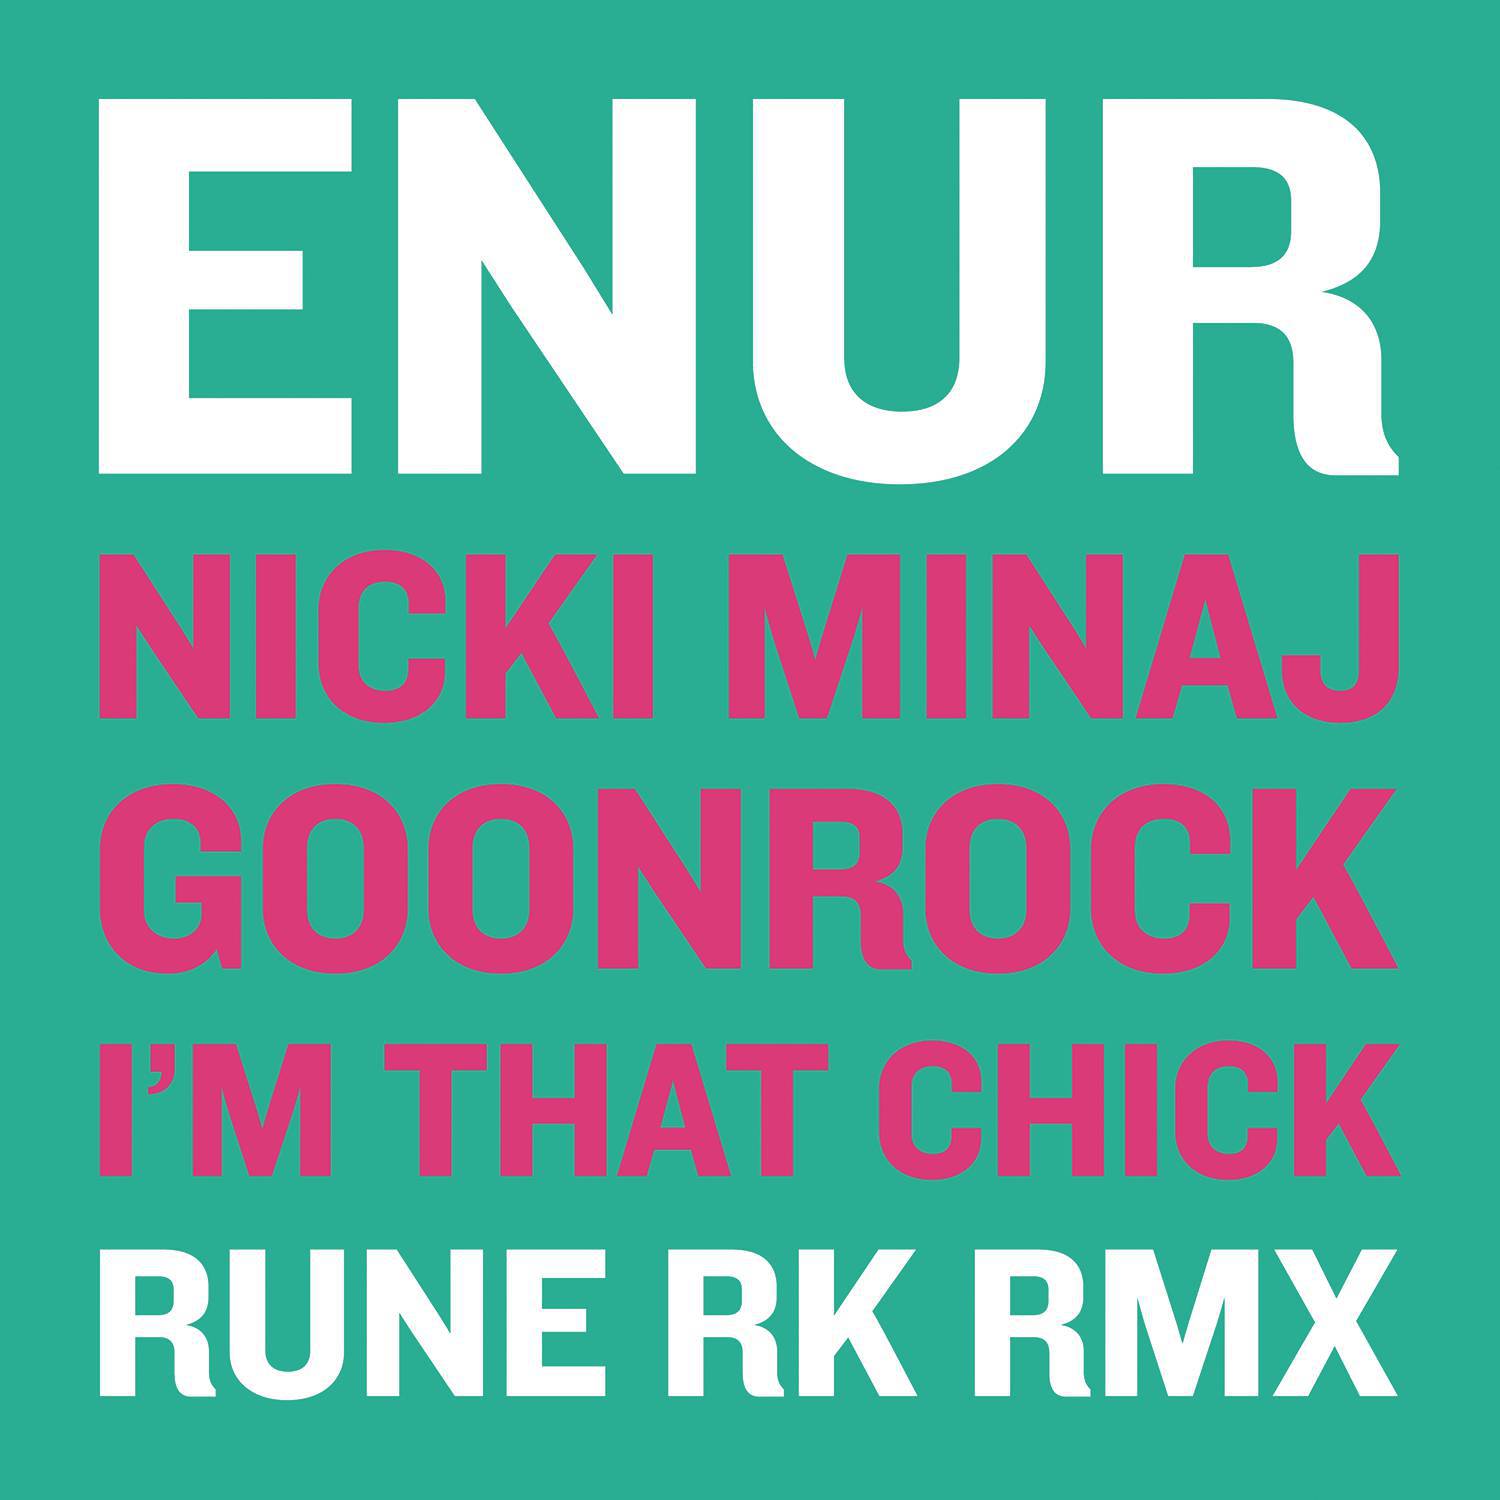 I'm That Chick (Rune RK Radio RMX)